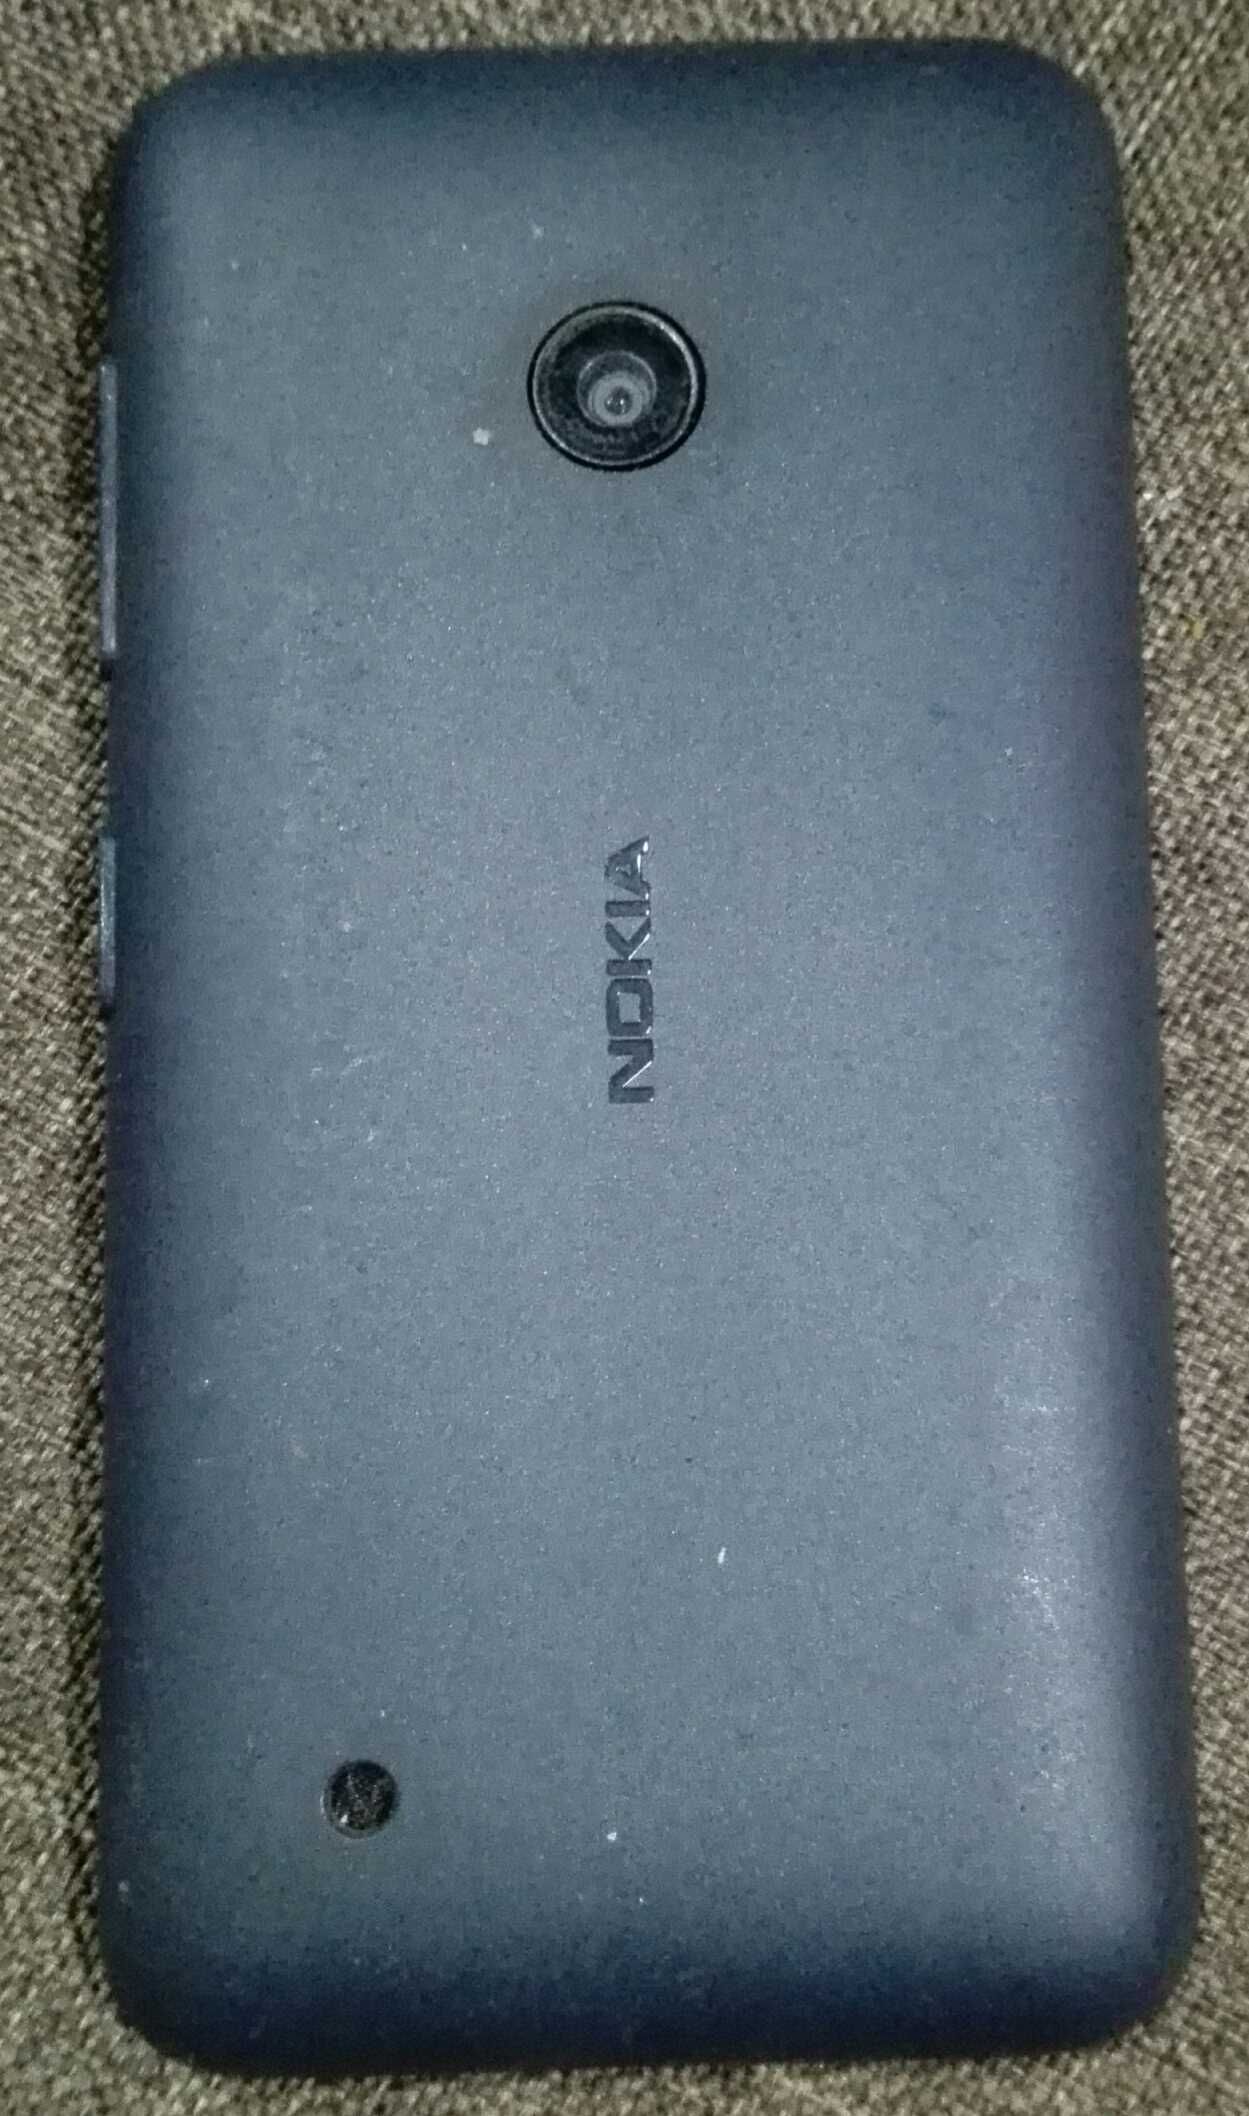 Telemóvel Nokia Lumia 530 - portes incluídos